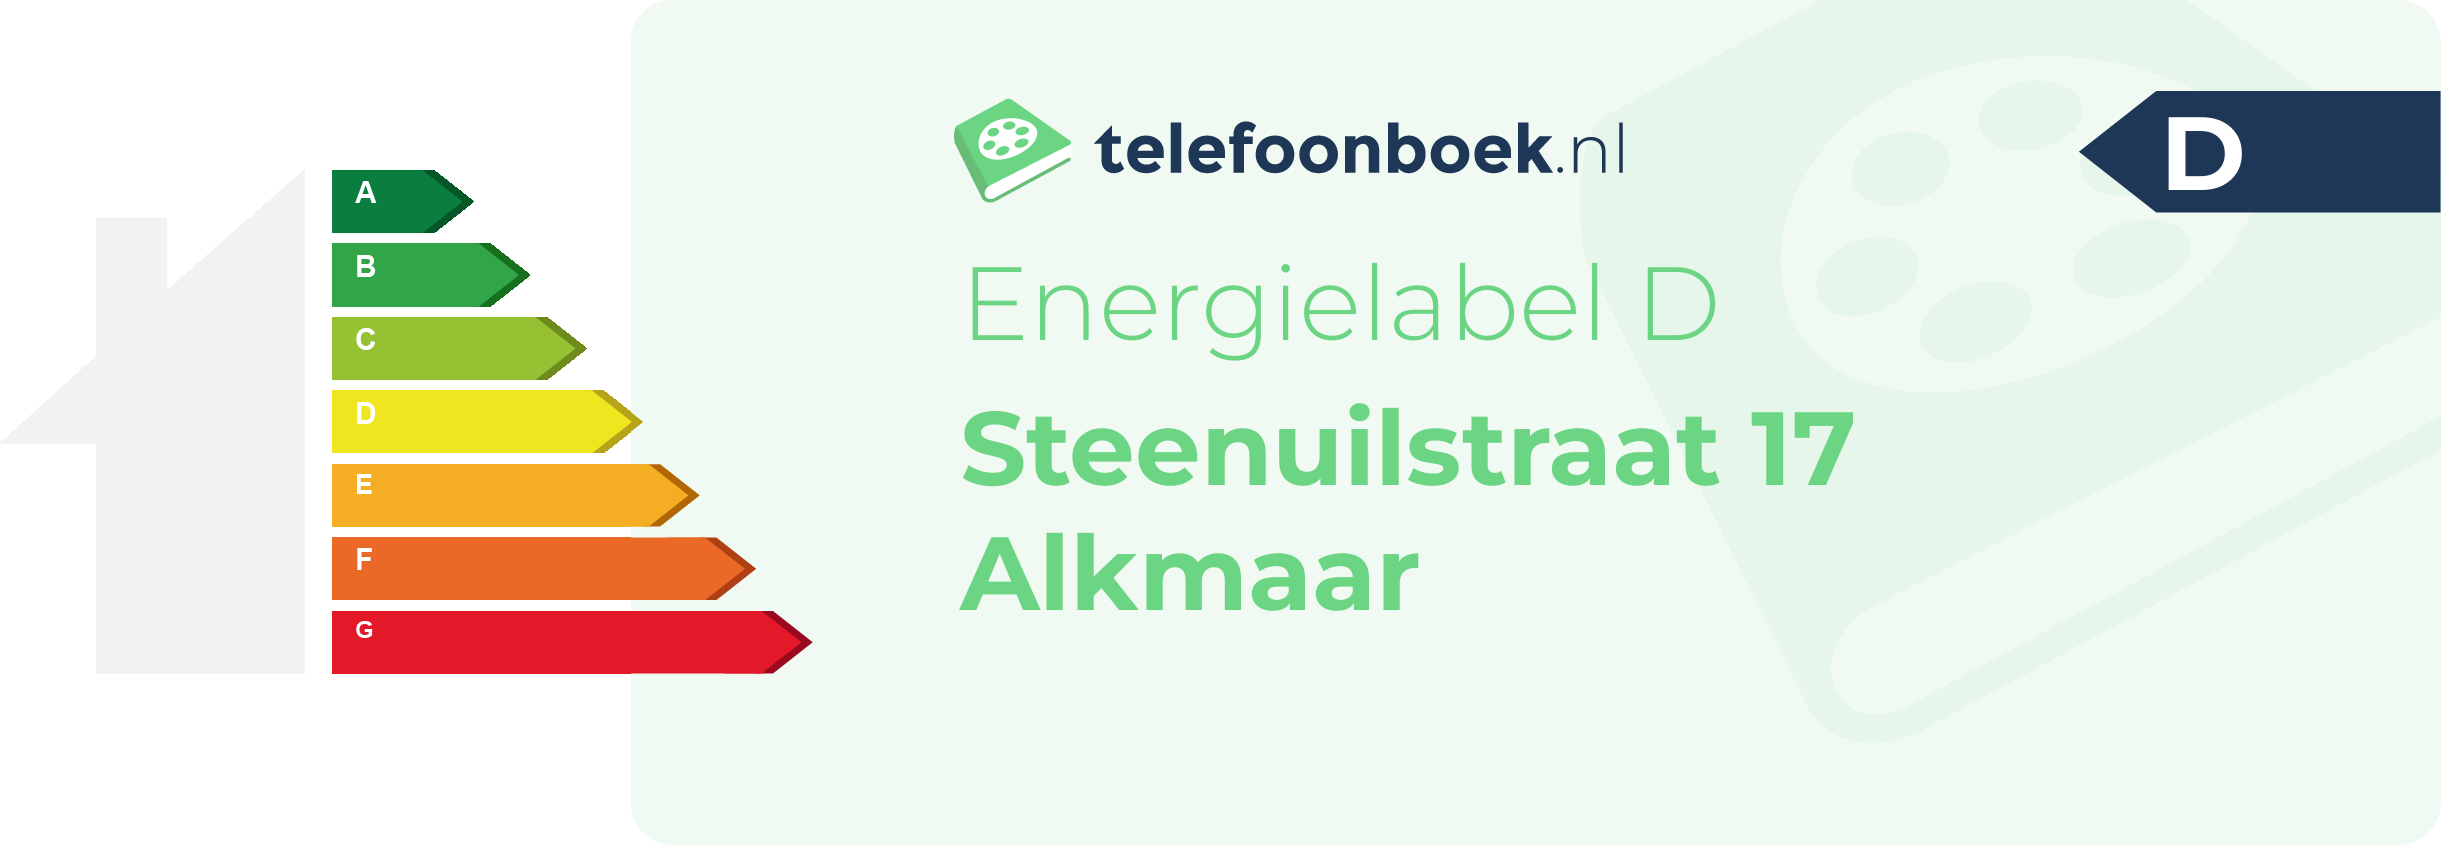 Energielabel Steenuilstraat 17 Alkmaar